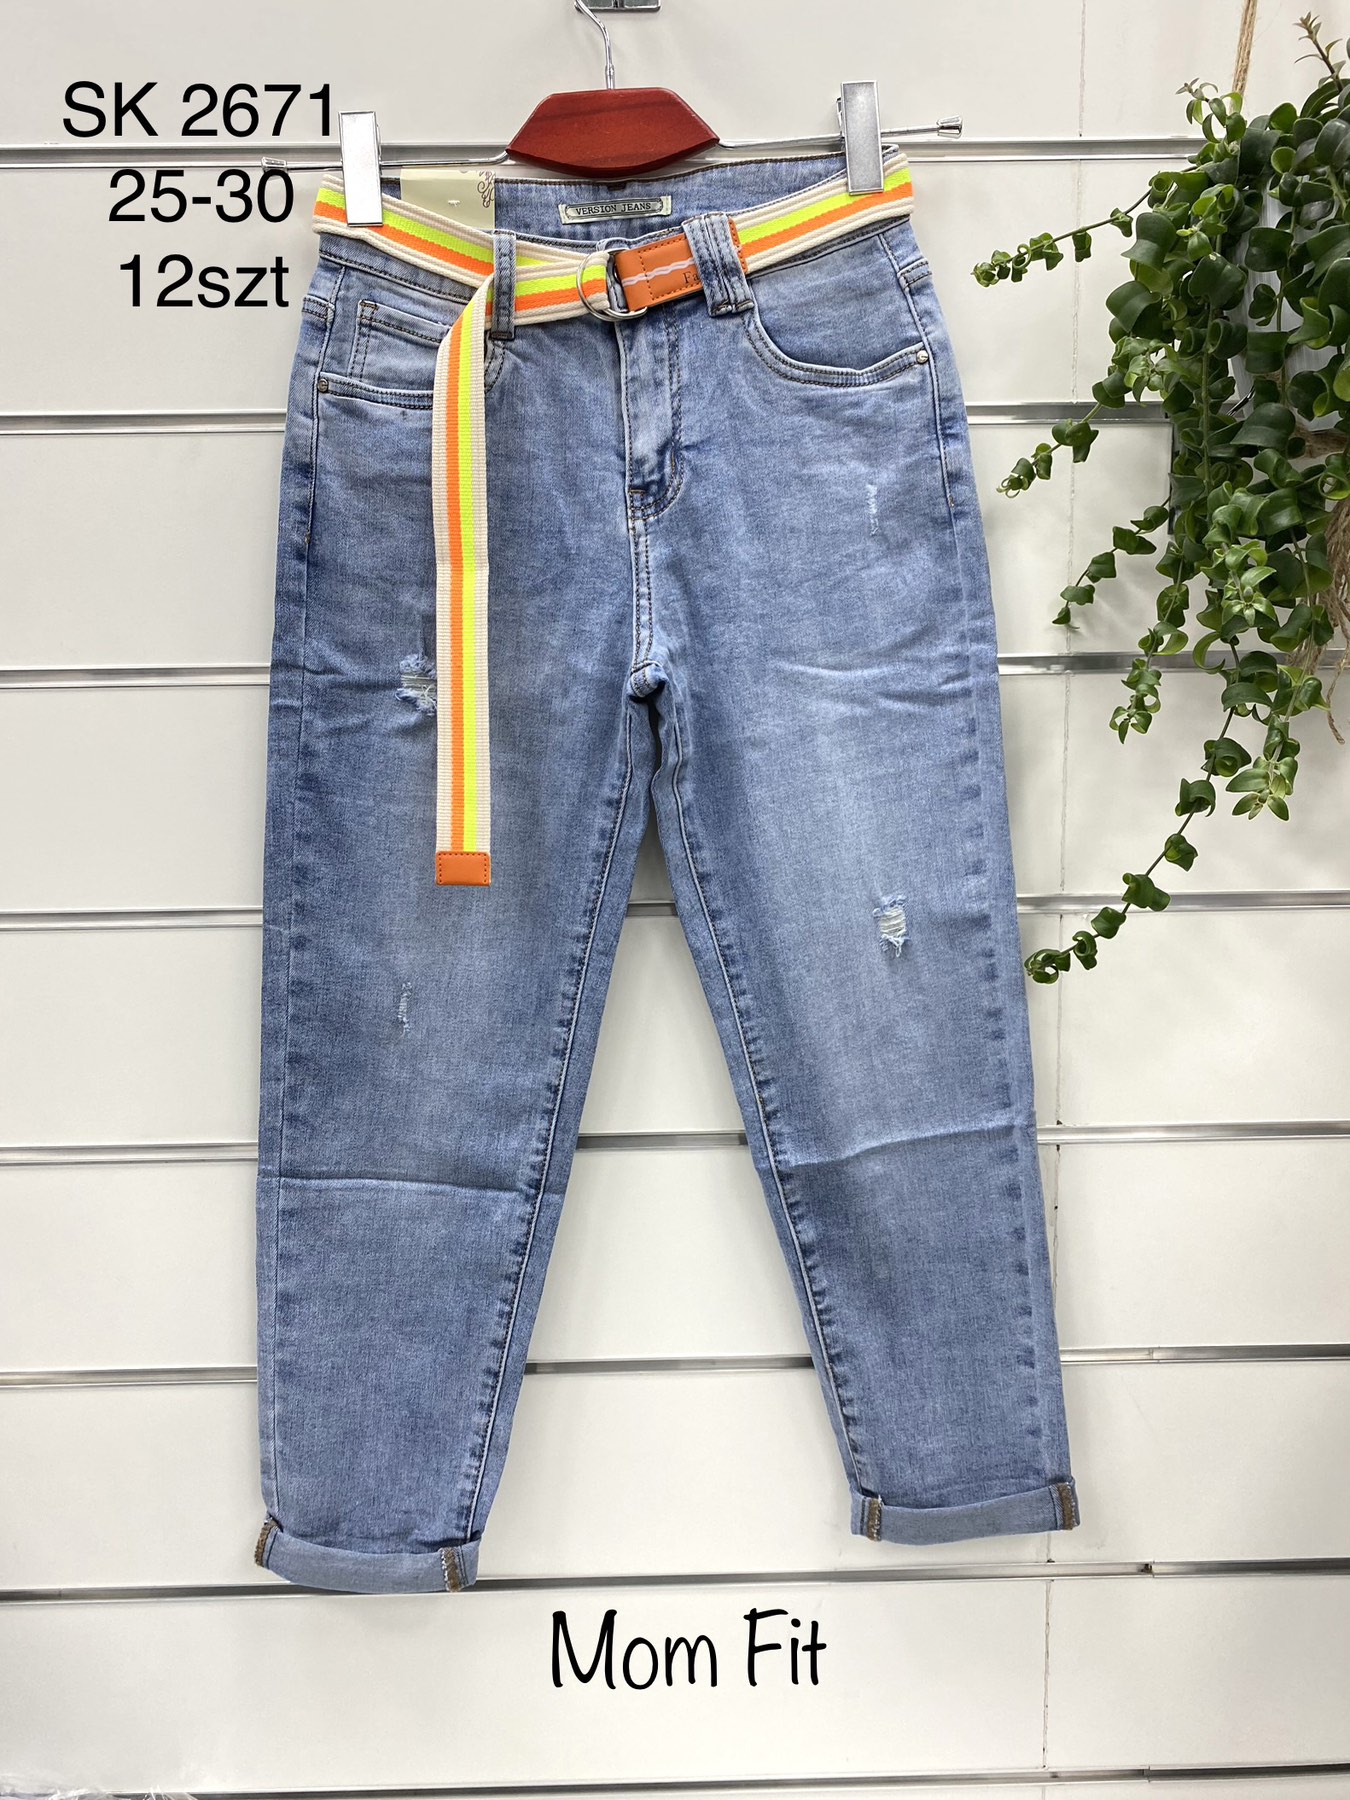 Spodnie damskie jeans Roz  27-32.  1 kolor . Paczka 12szt